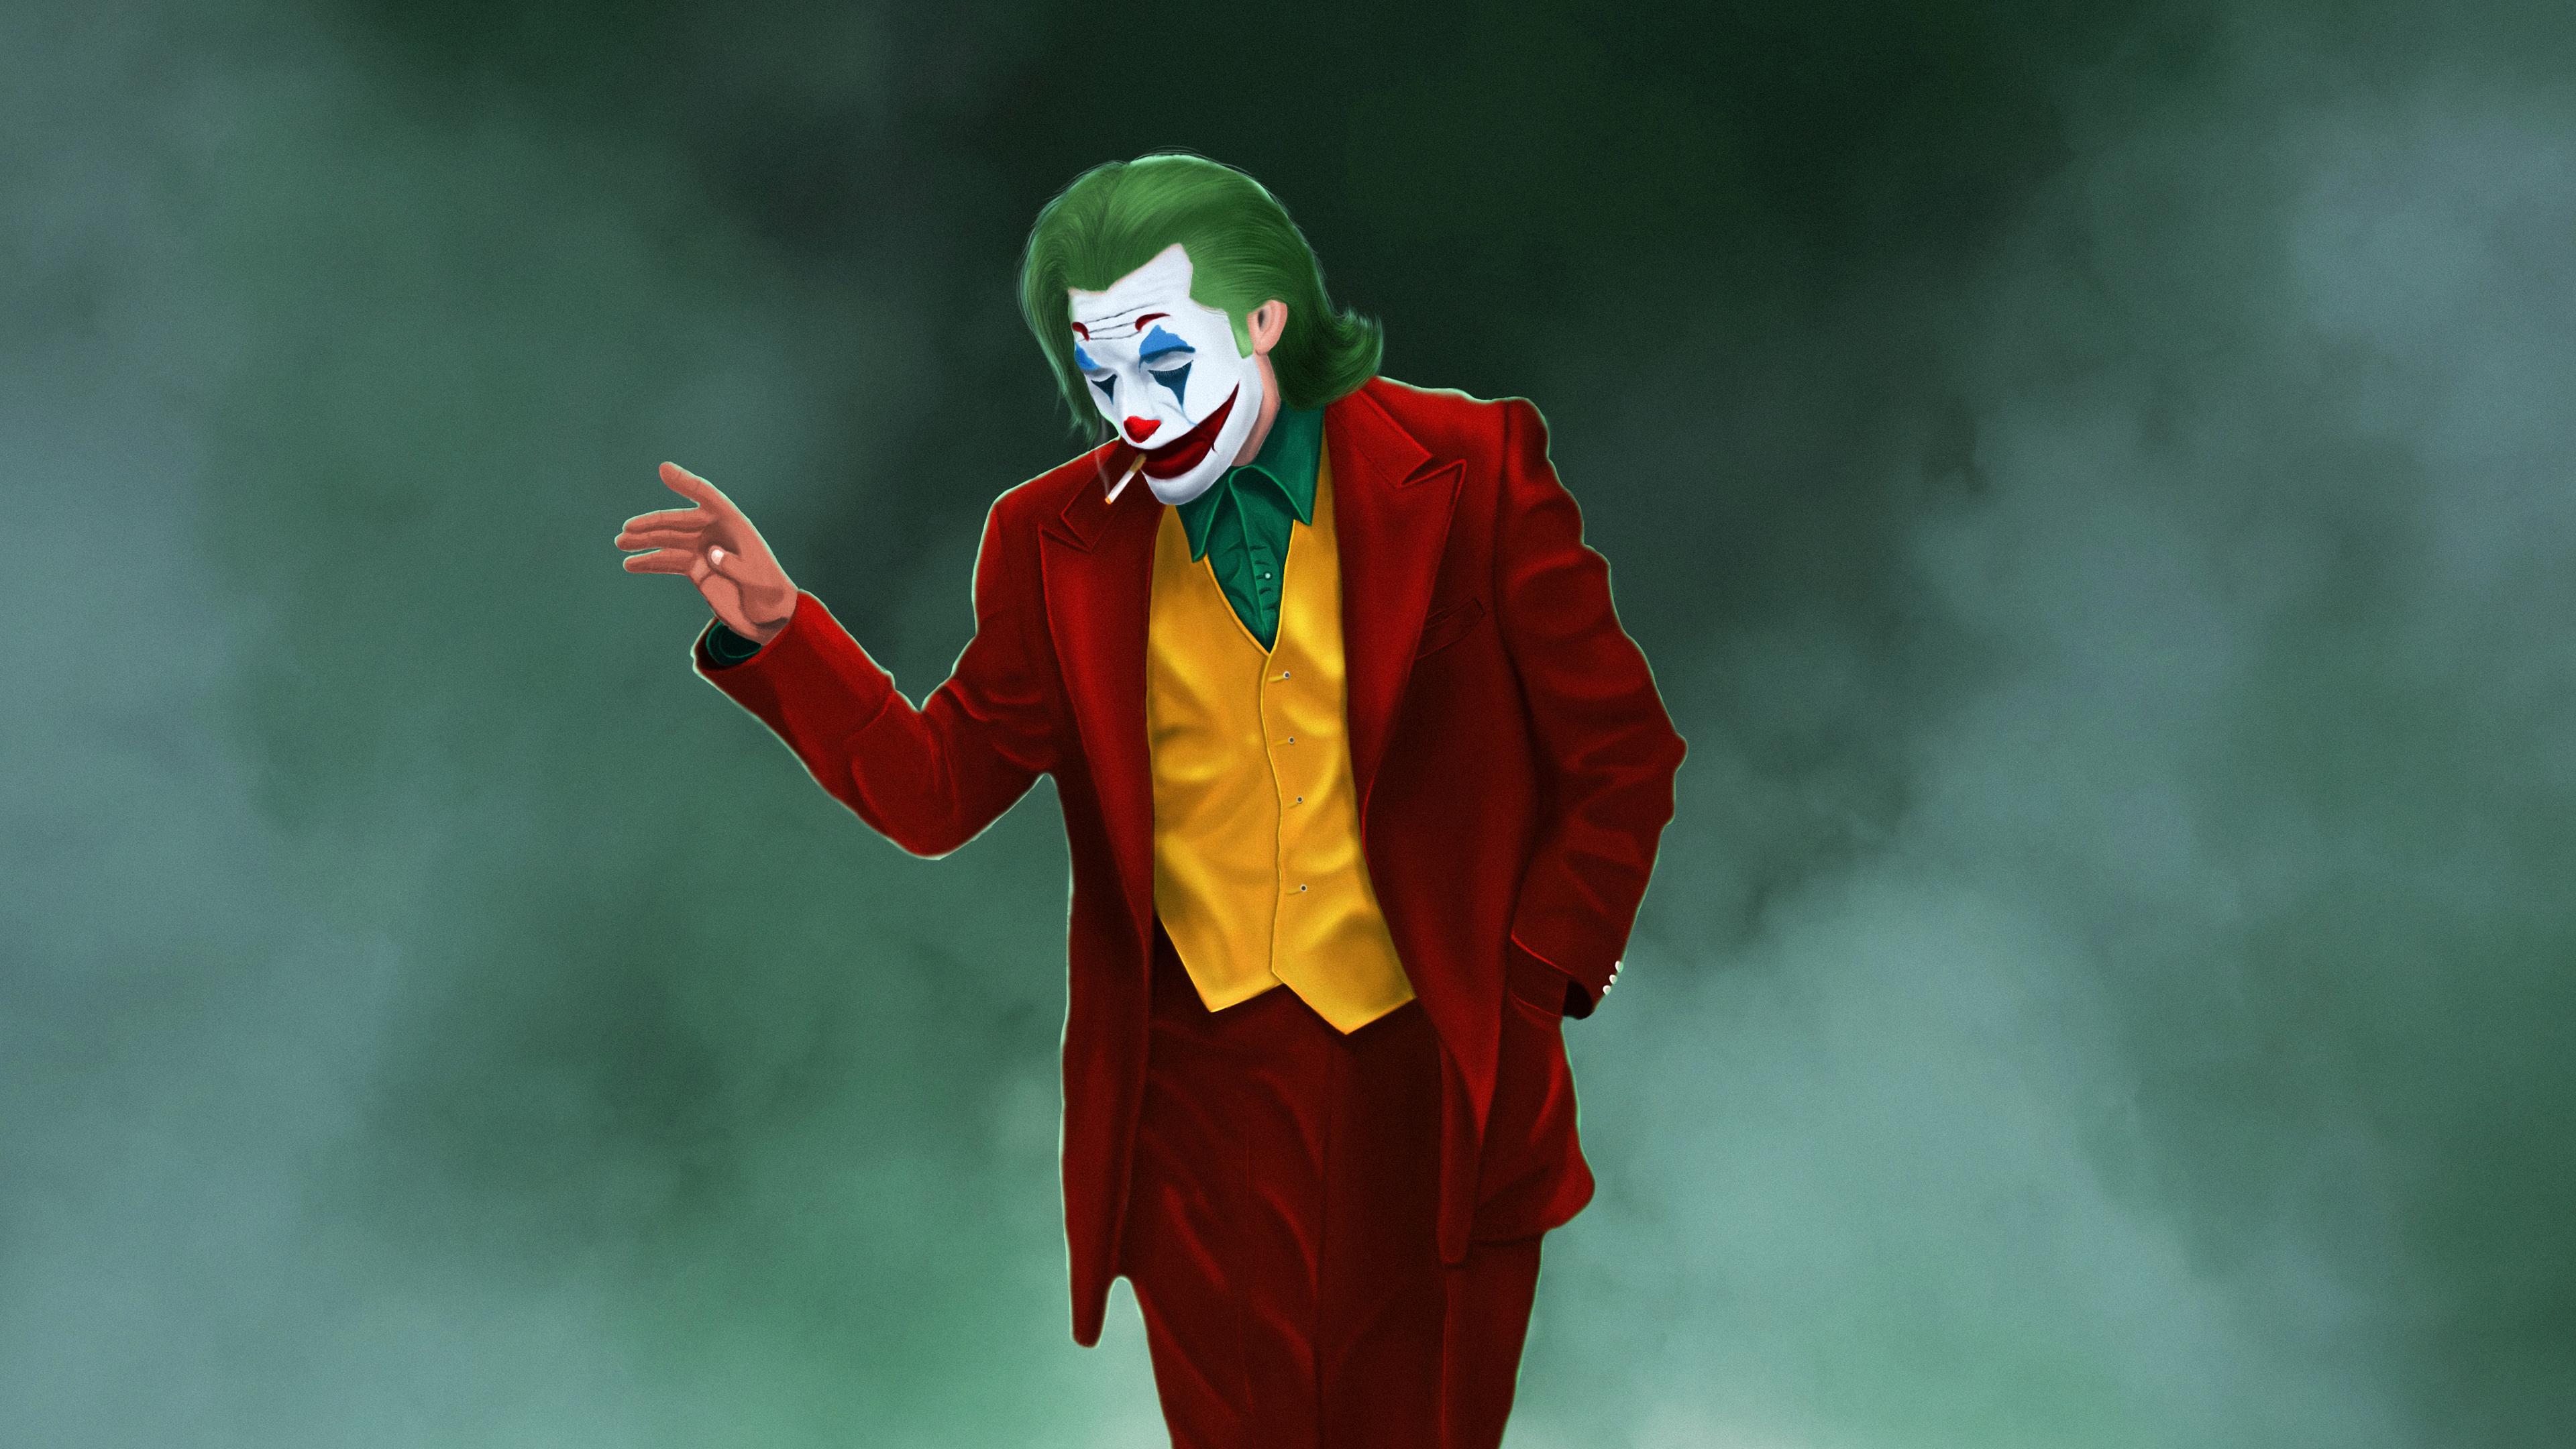 Joker 2019 Desktop Wallpapers - Wallpaper Cave